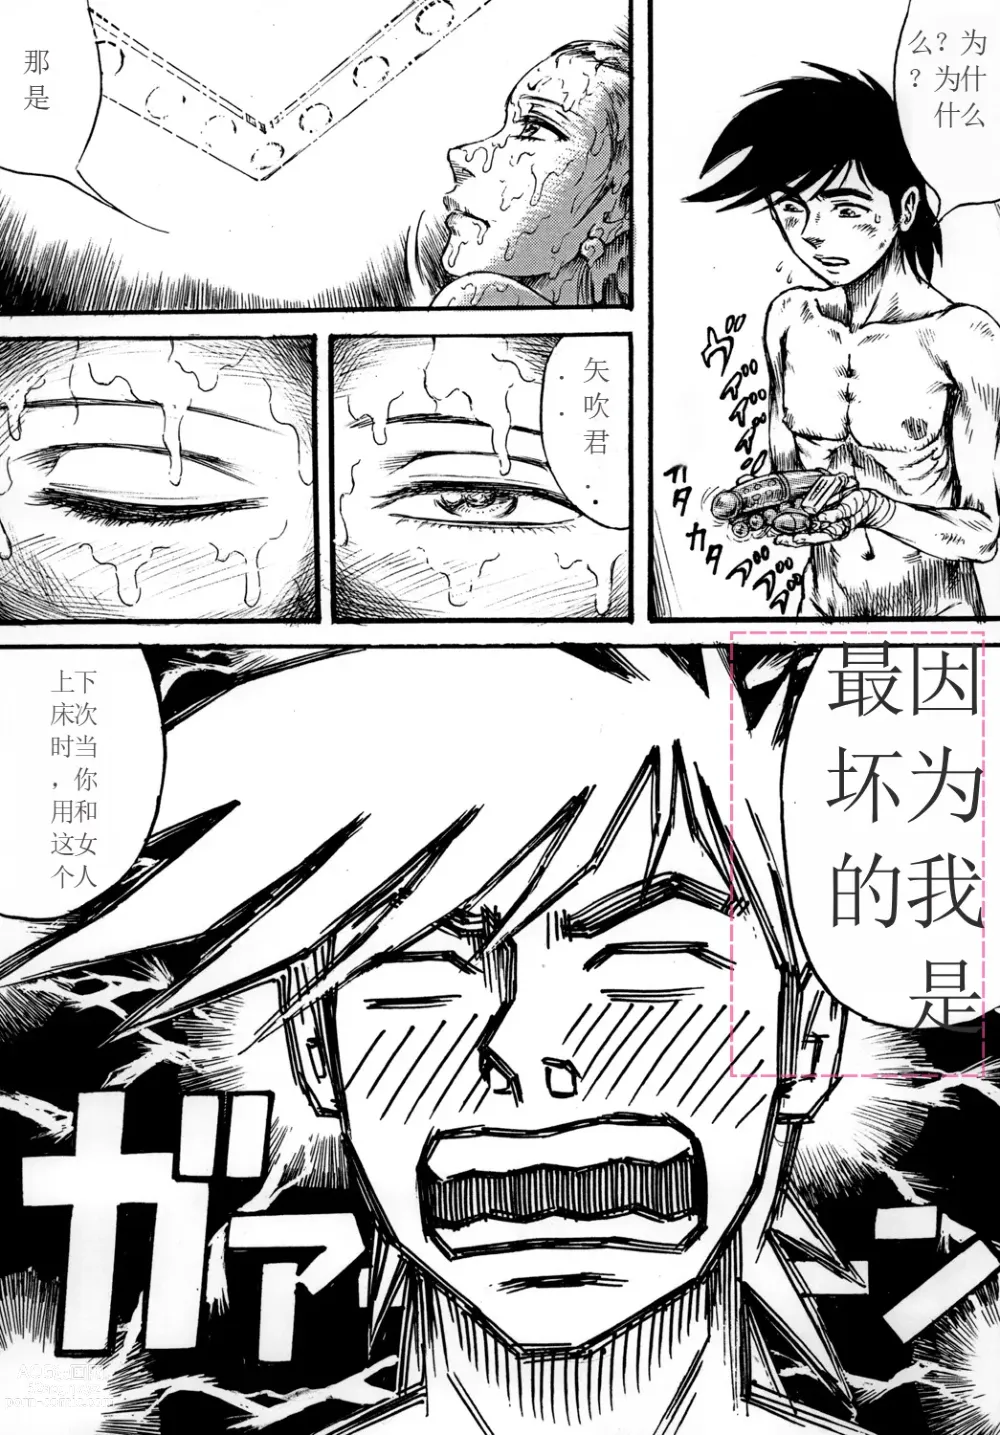 Page 46 of doujinshi Youjinbou Otaku Matsuri 7